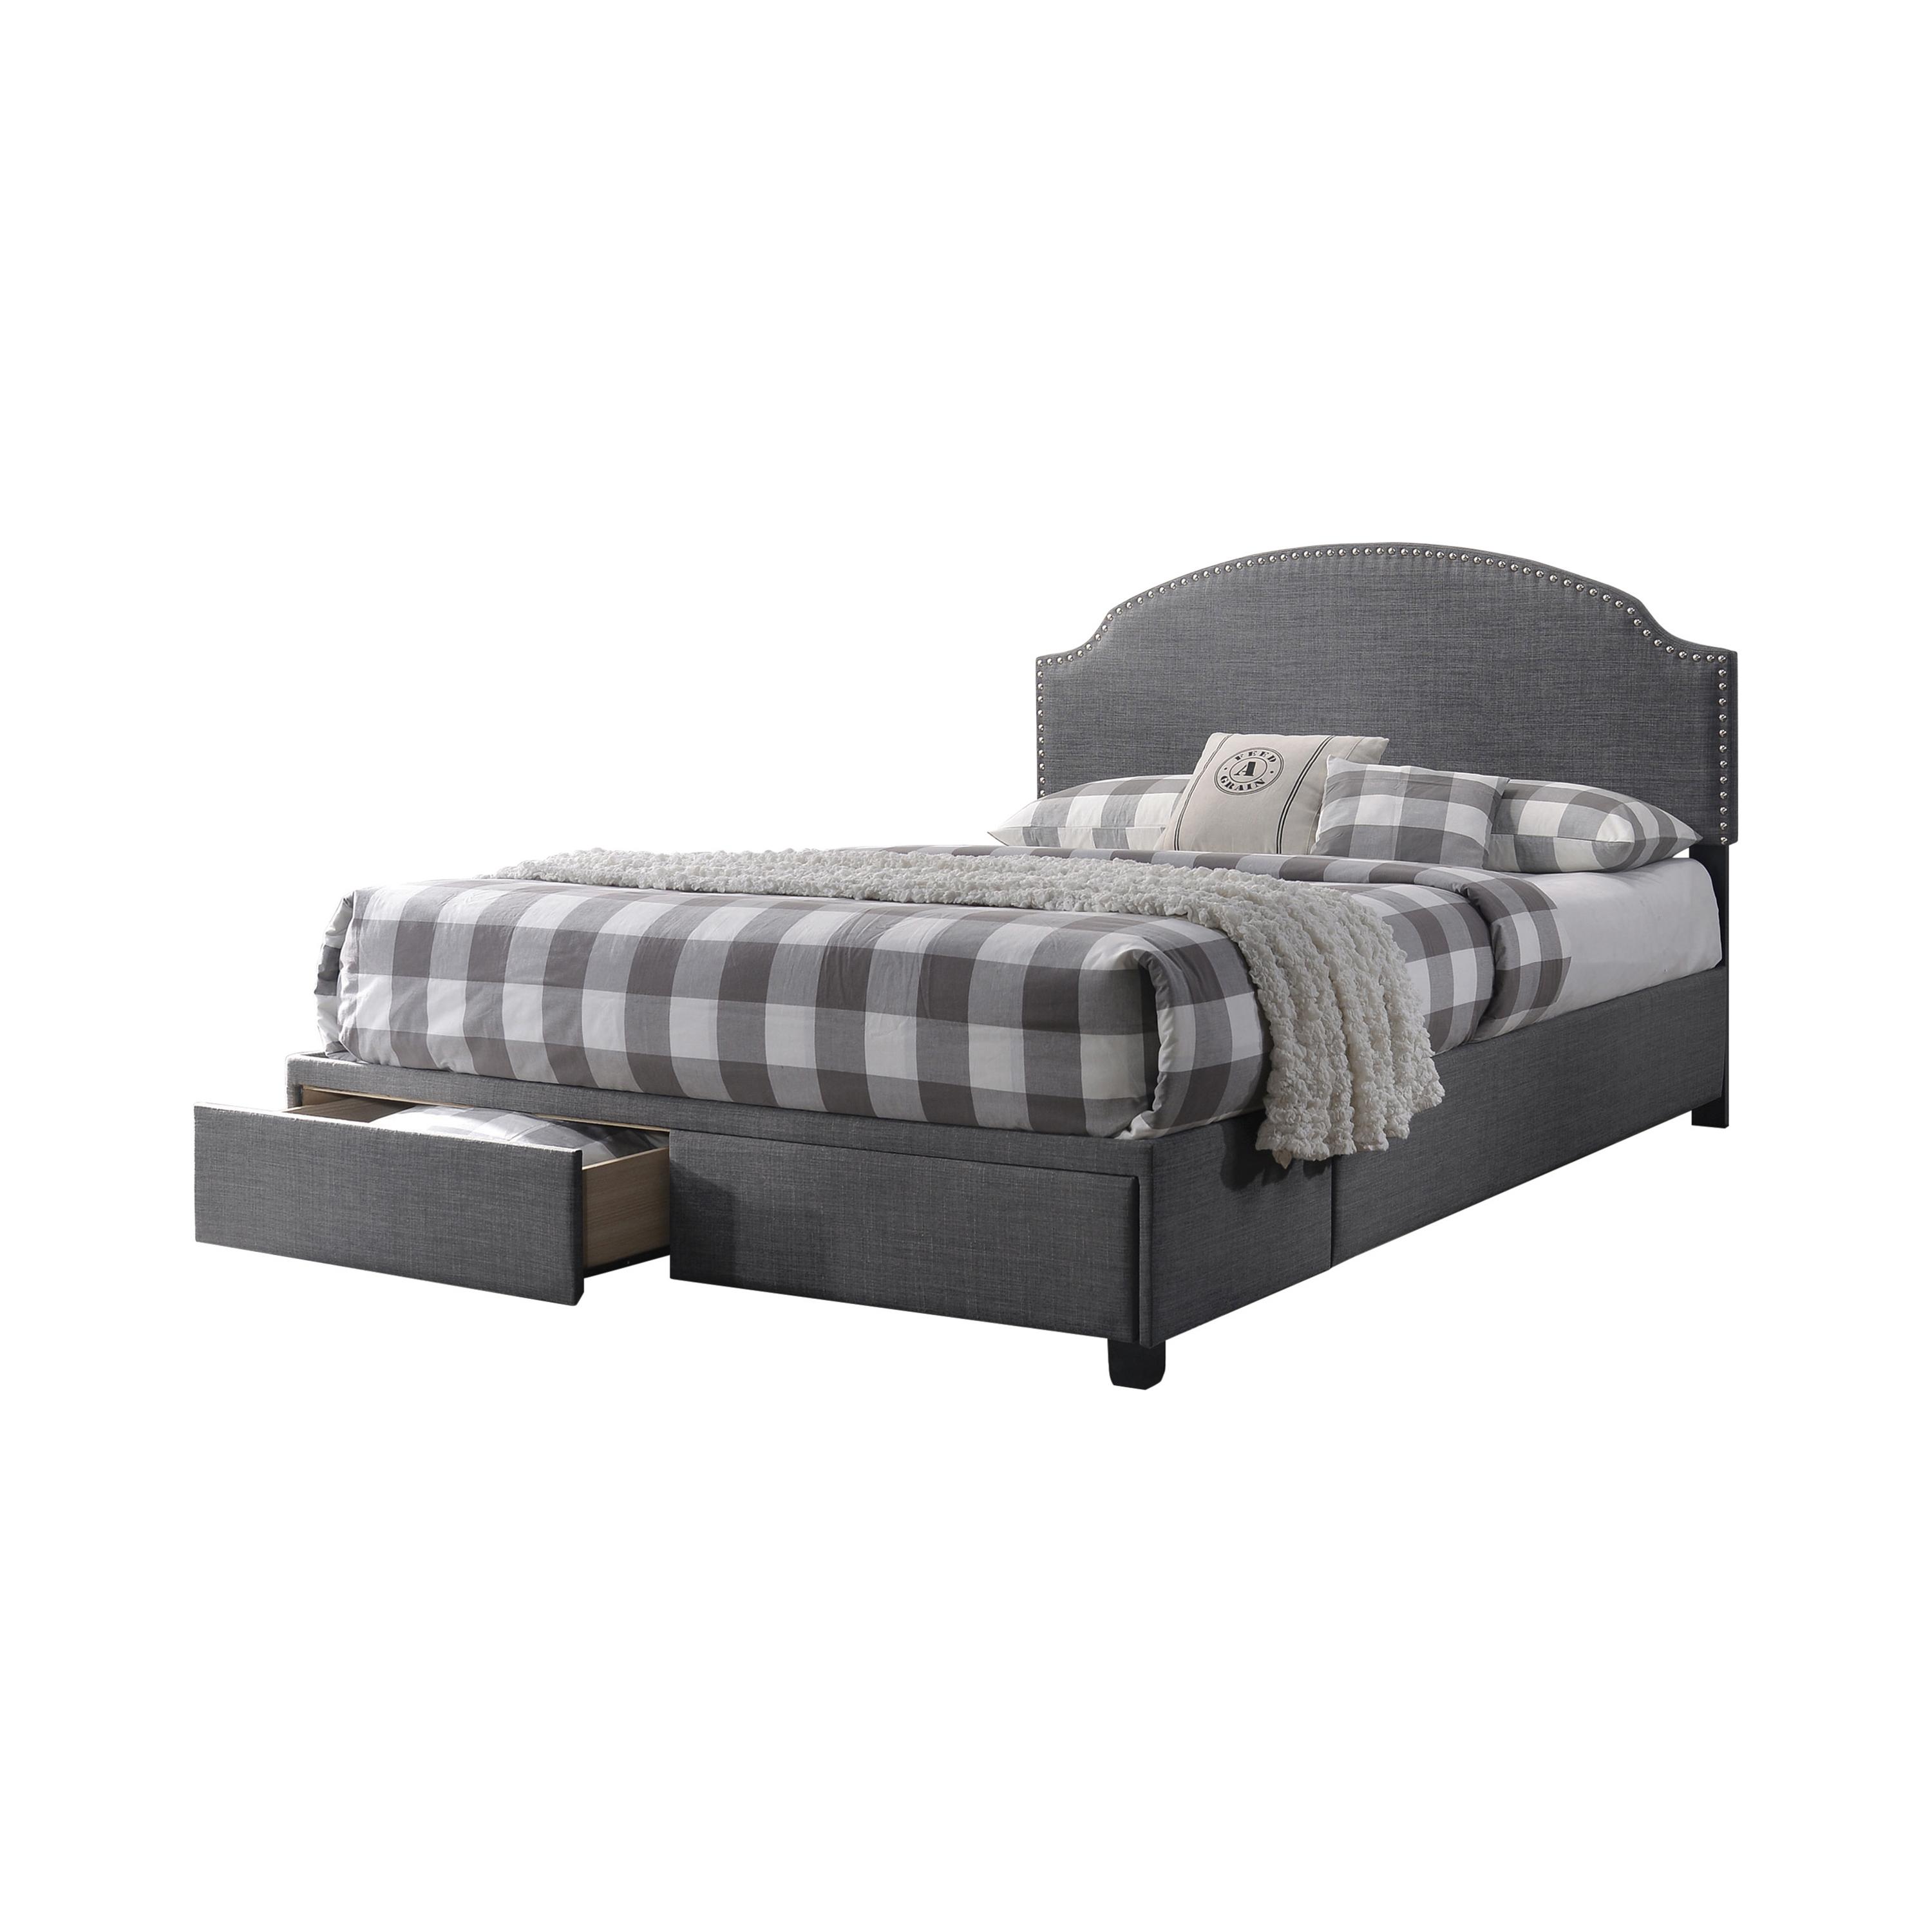 Modern Bed 305895KE Niland 305895KE in Charcoal Fabric